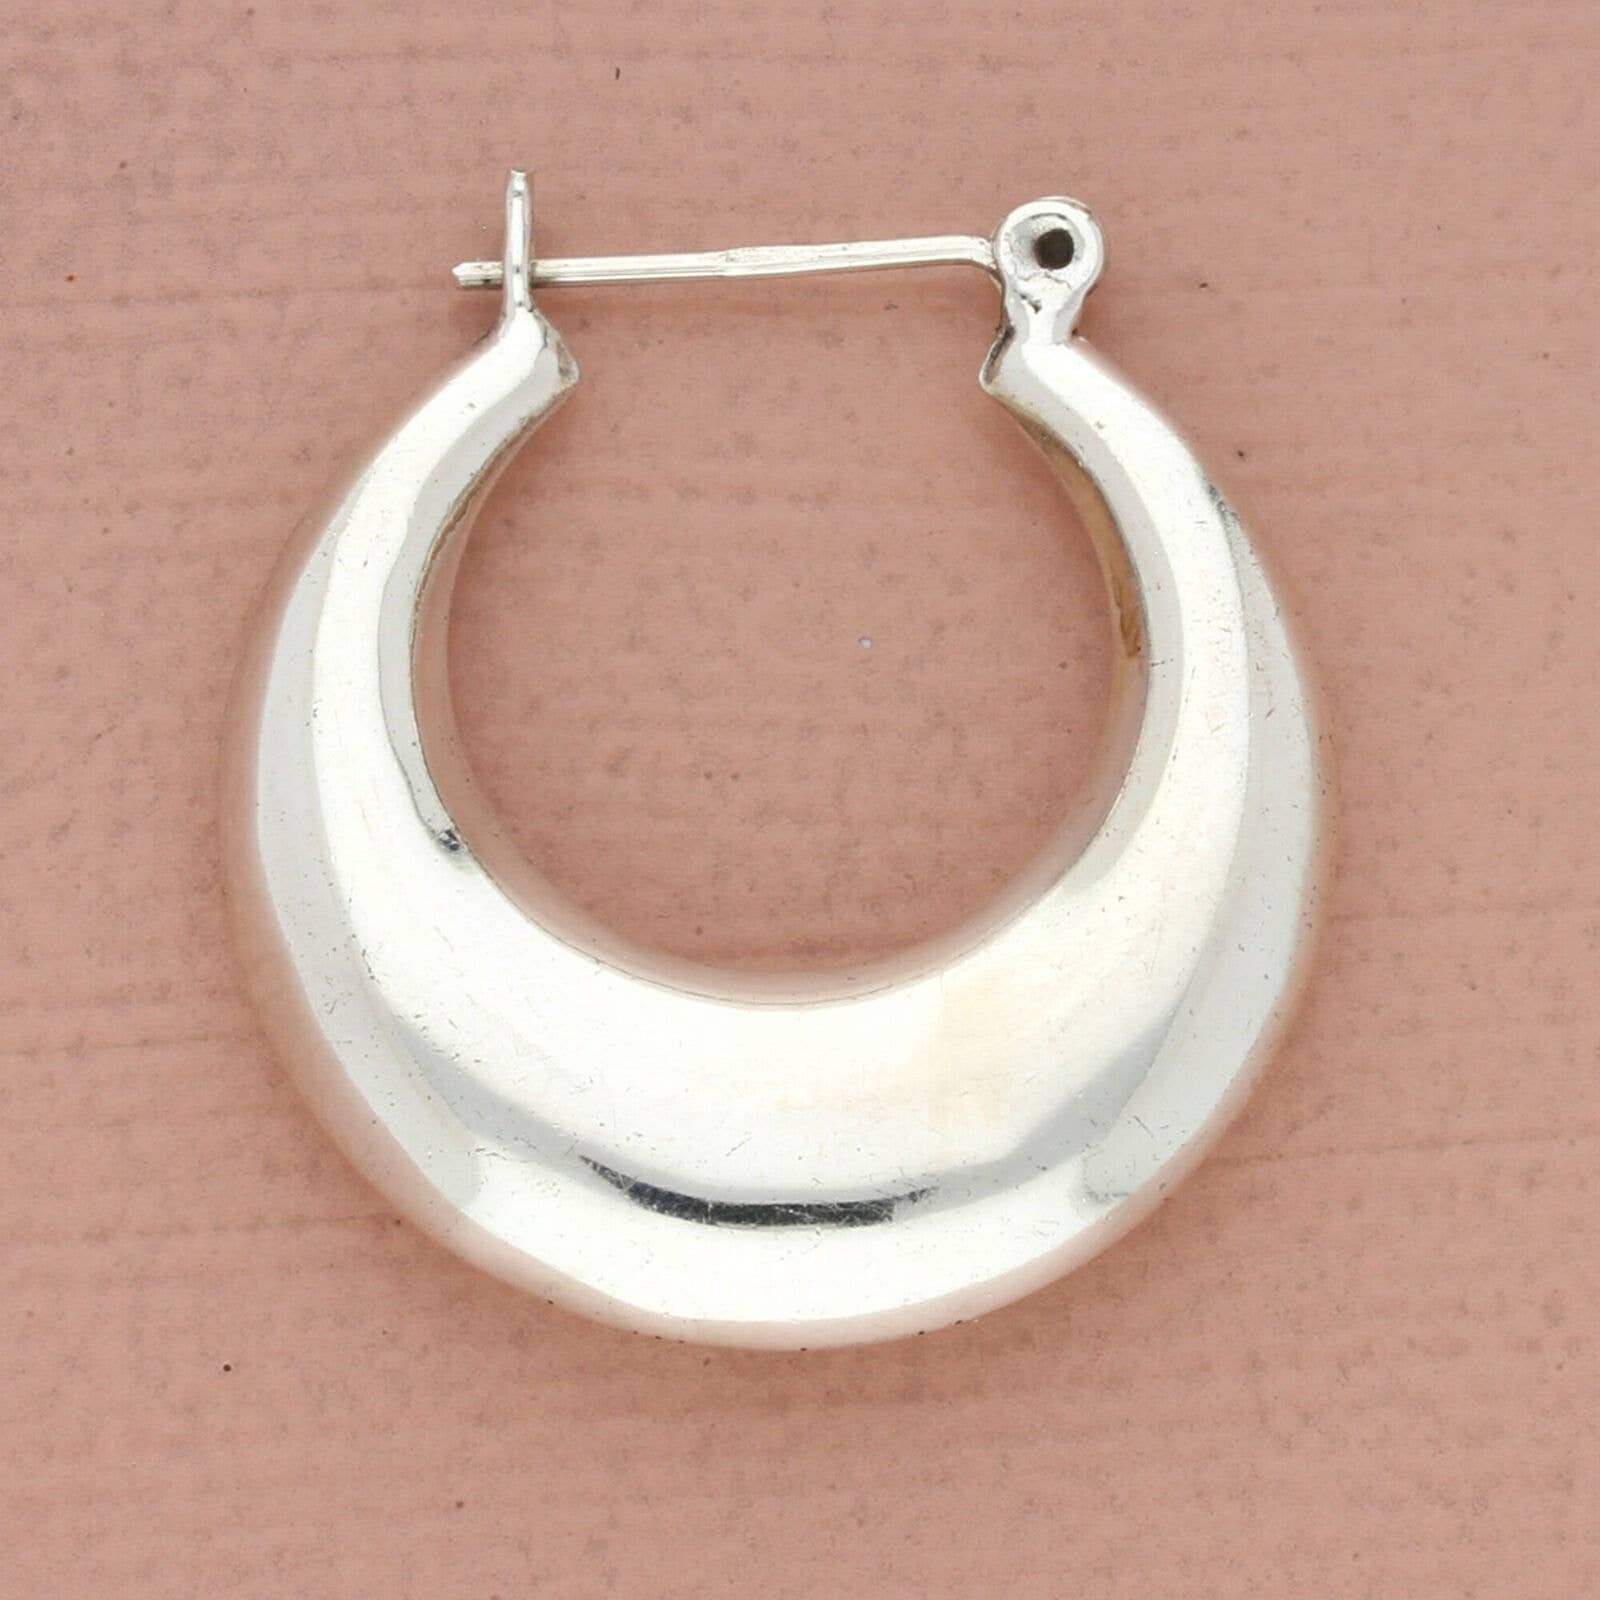 Puffy Heart Cubic Zirconia Drop Hoop Earrings - Wild Fable™ Silver